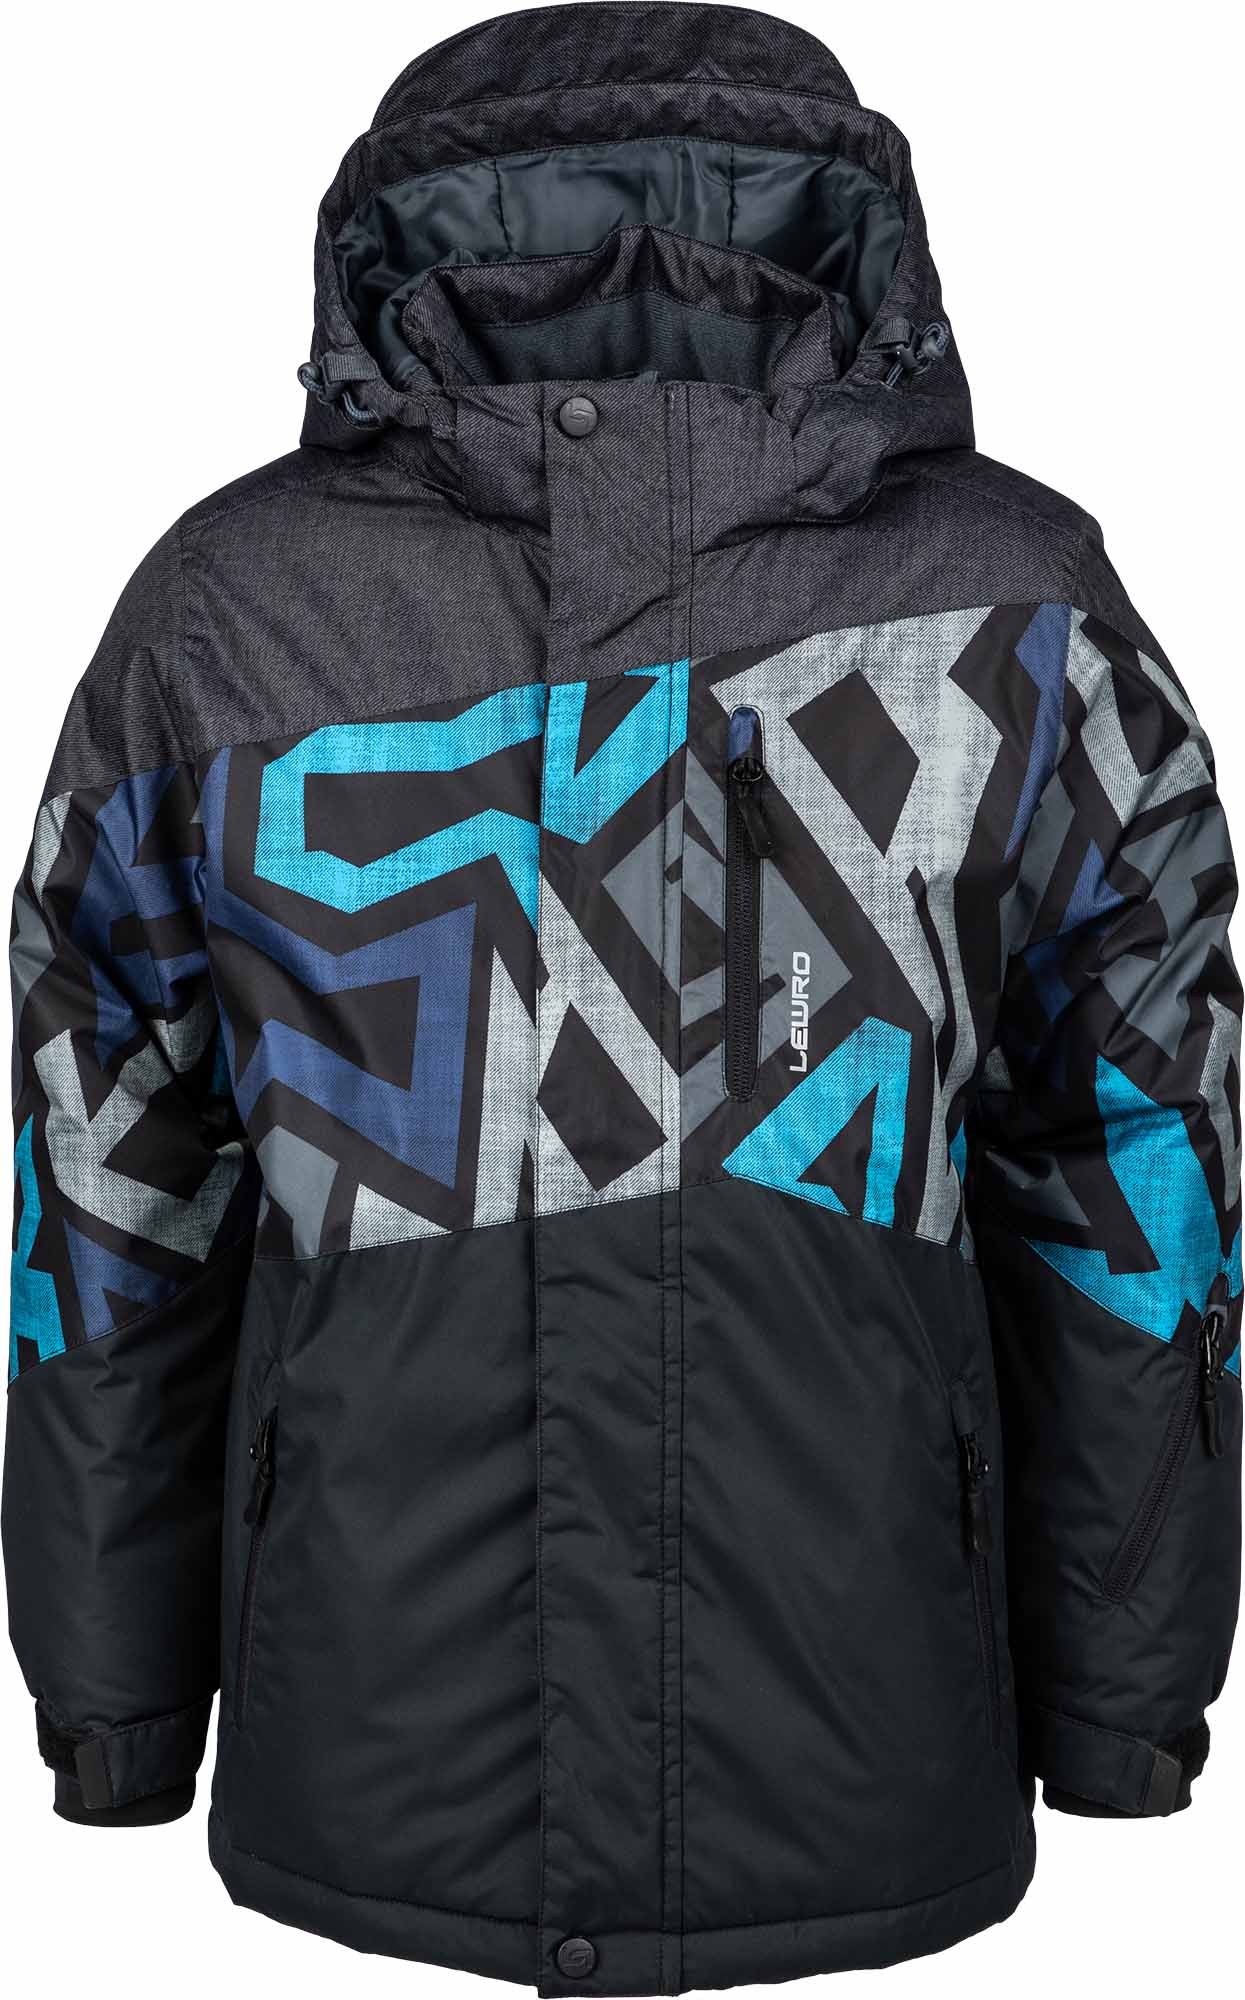 Boys’ snowboard jacket